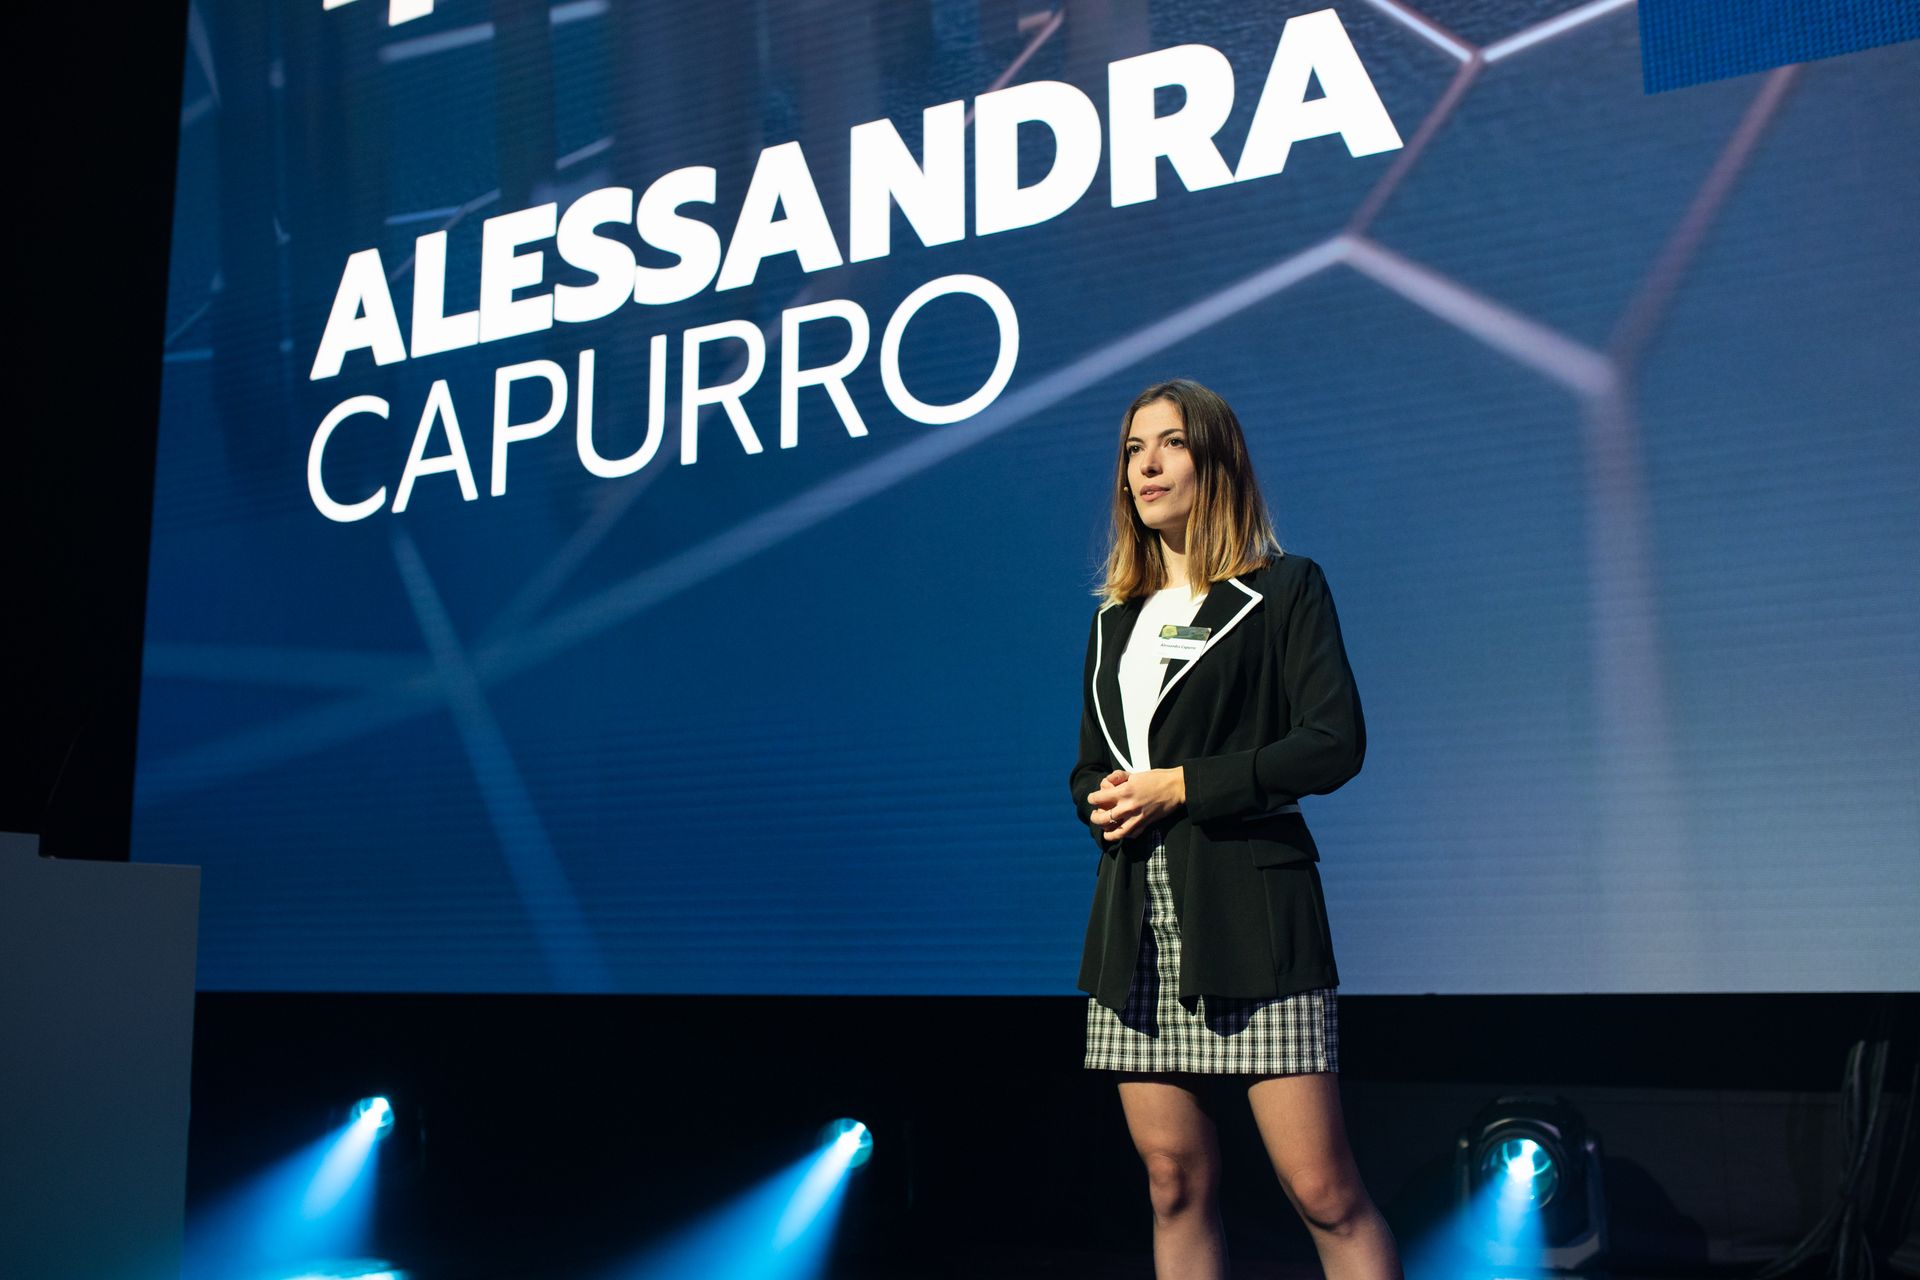 Alessandra Capurro, víťazka klasifikácie „Nextgen Hero“, na slávnostnom odovzdávaní cien „Digital Economy Award“ Švajčiarska